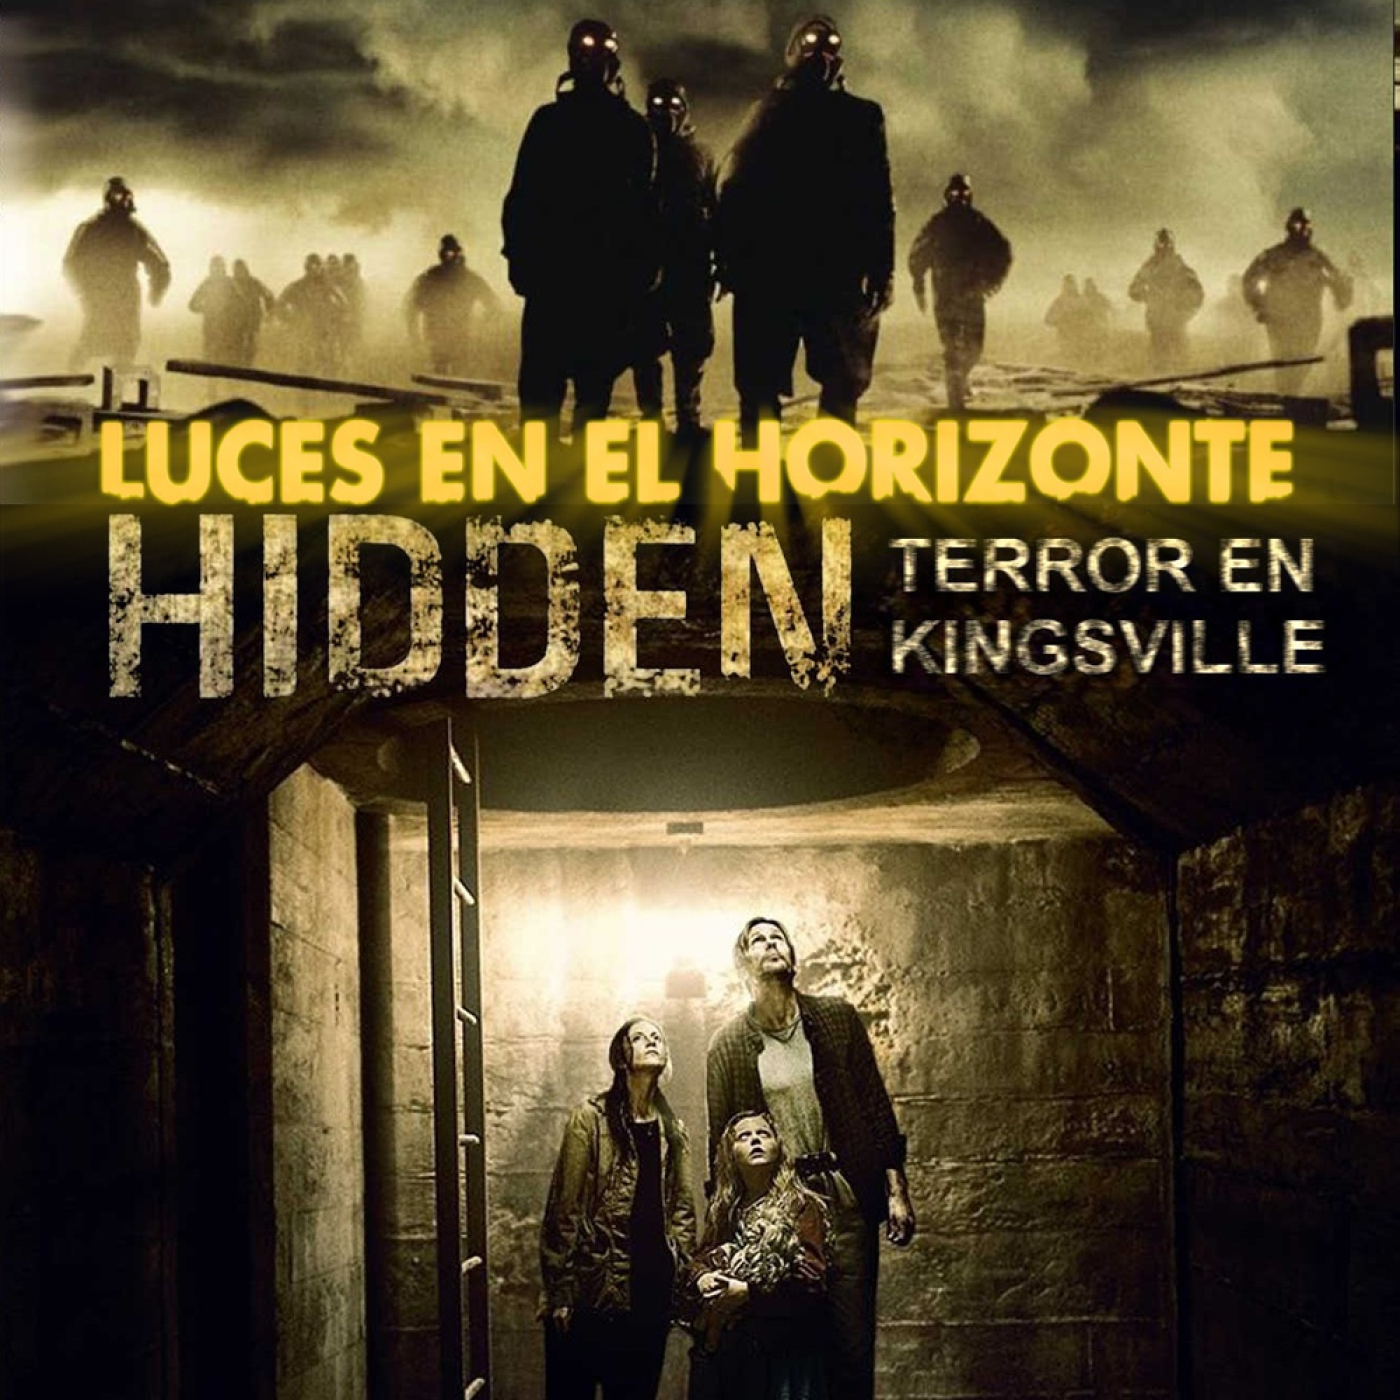 Hidden, Terror en Kingsville - Luces en el Horizonte - Episodio exclusivo para mecenas